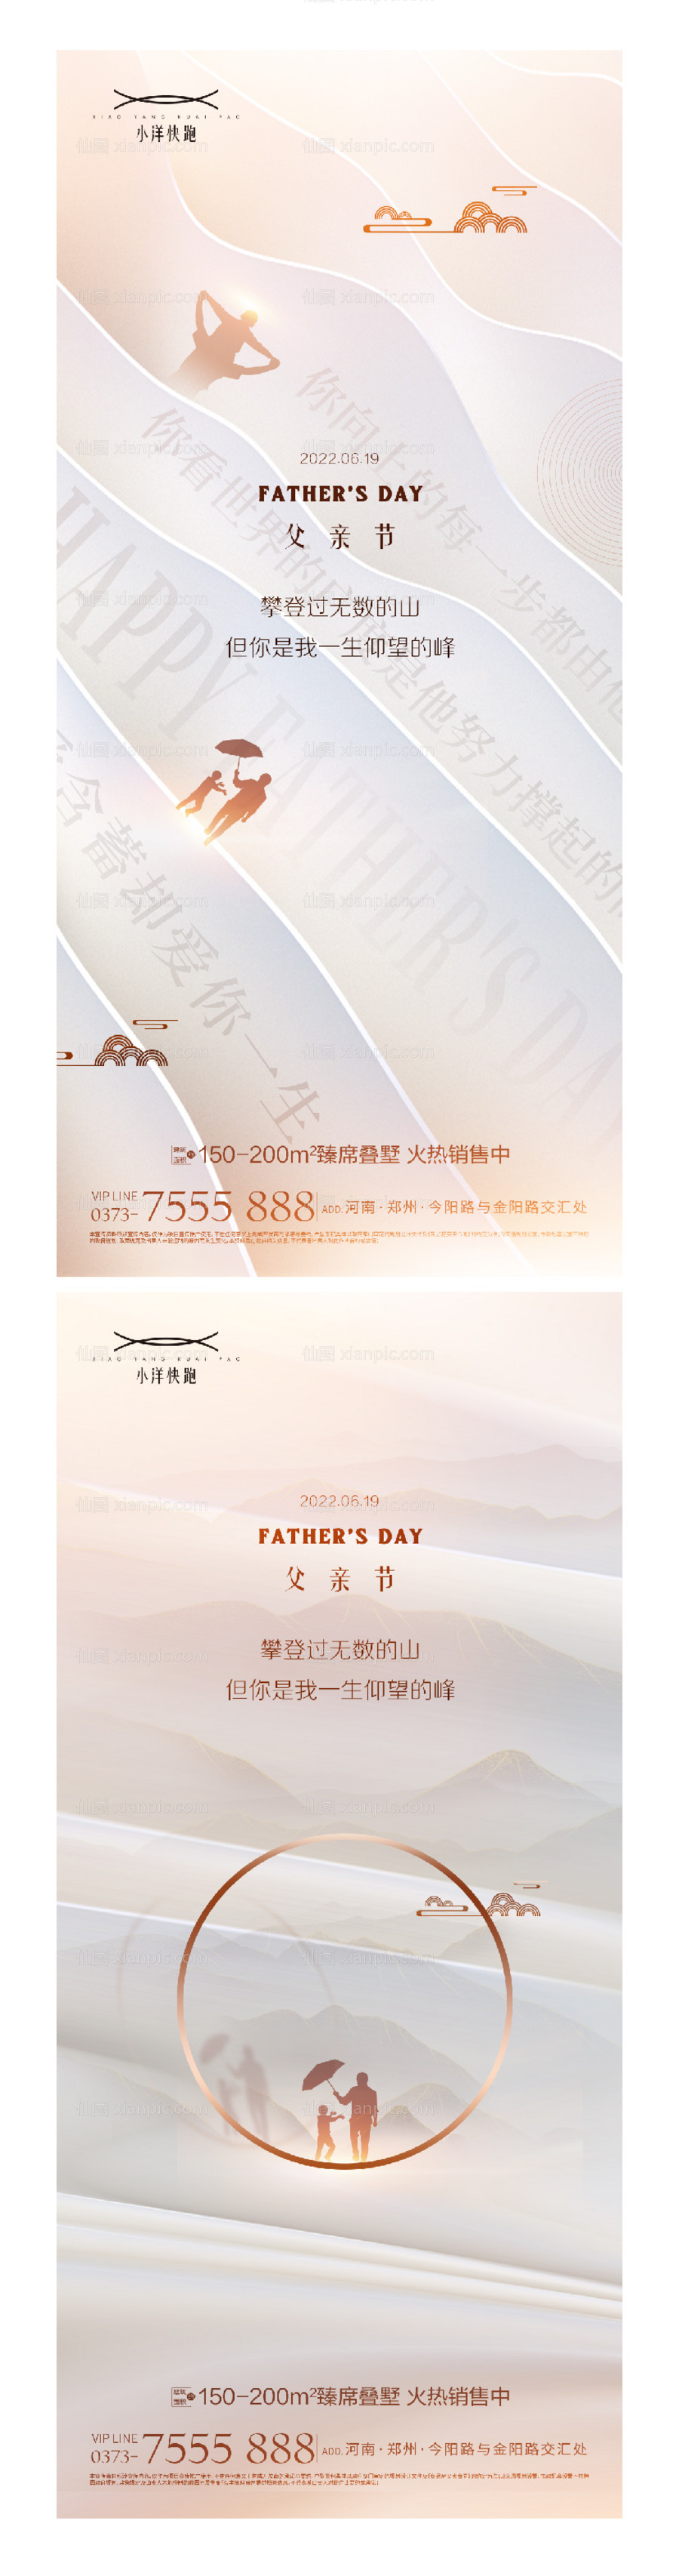 素材乐-地产父亲节节日中式海报